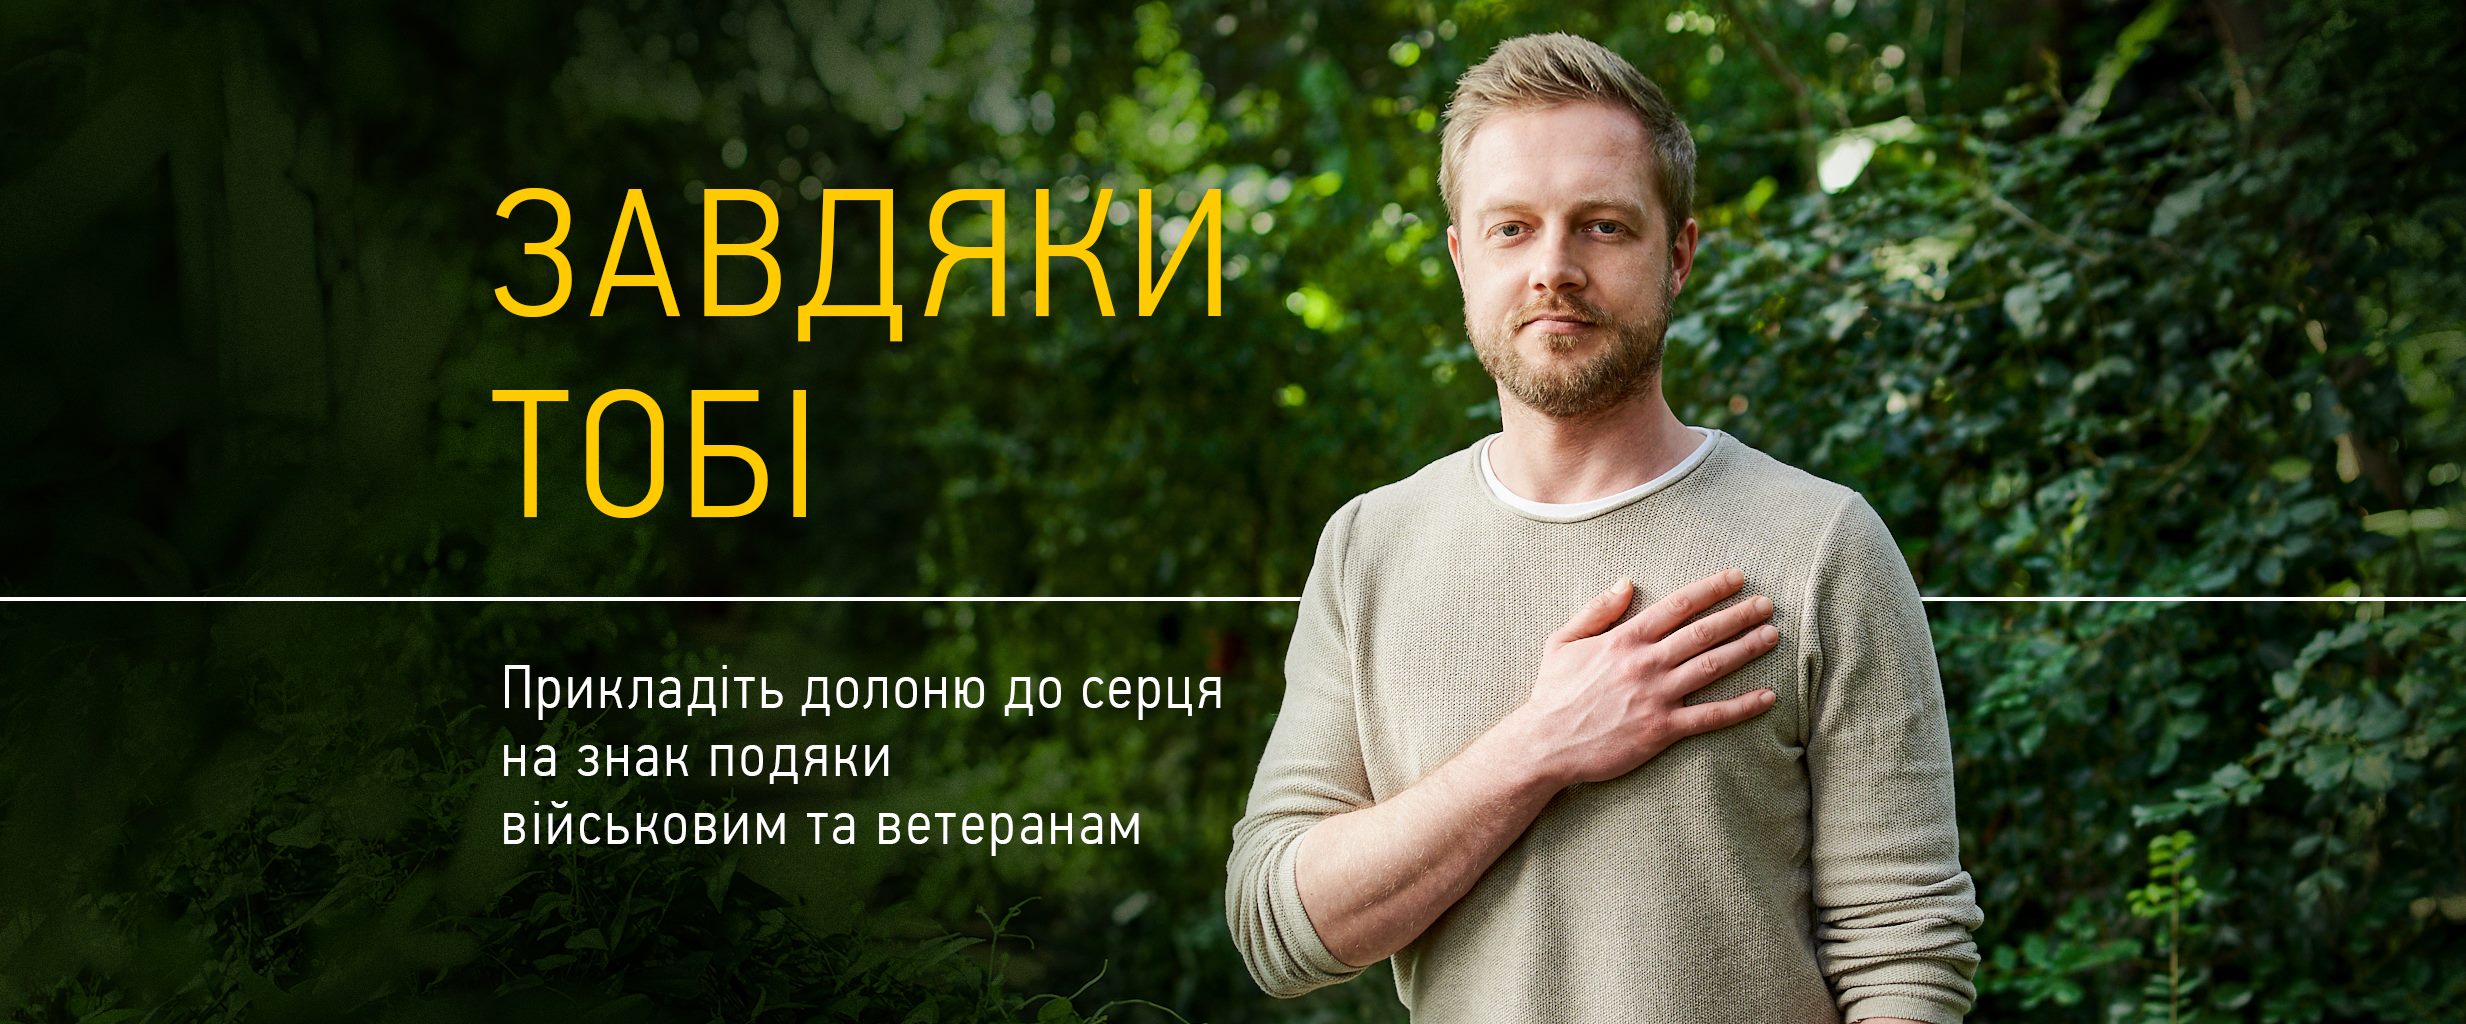 Повага до армії — це не лише вдячність, але й кредит довіри: у Києві презентують кампанію «Завдяки тобі»